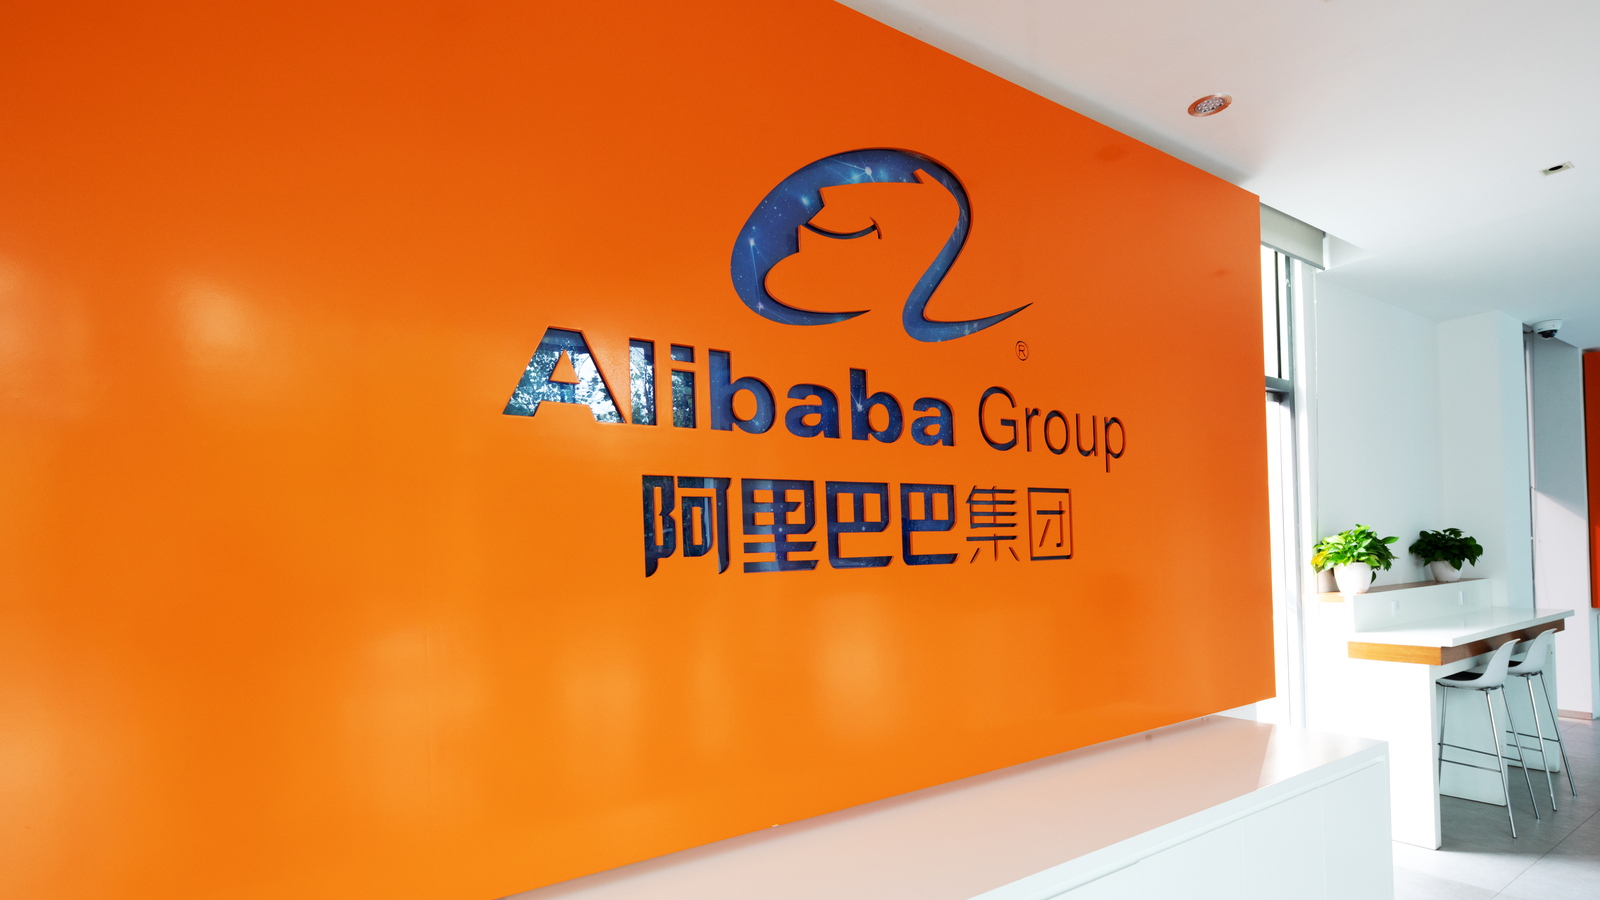 Nouveau record de chiffre d'affaires pour le Single Day d'Alibaba